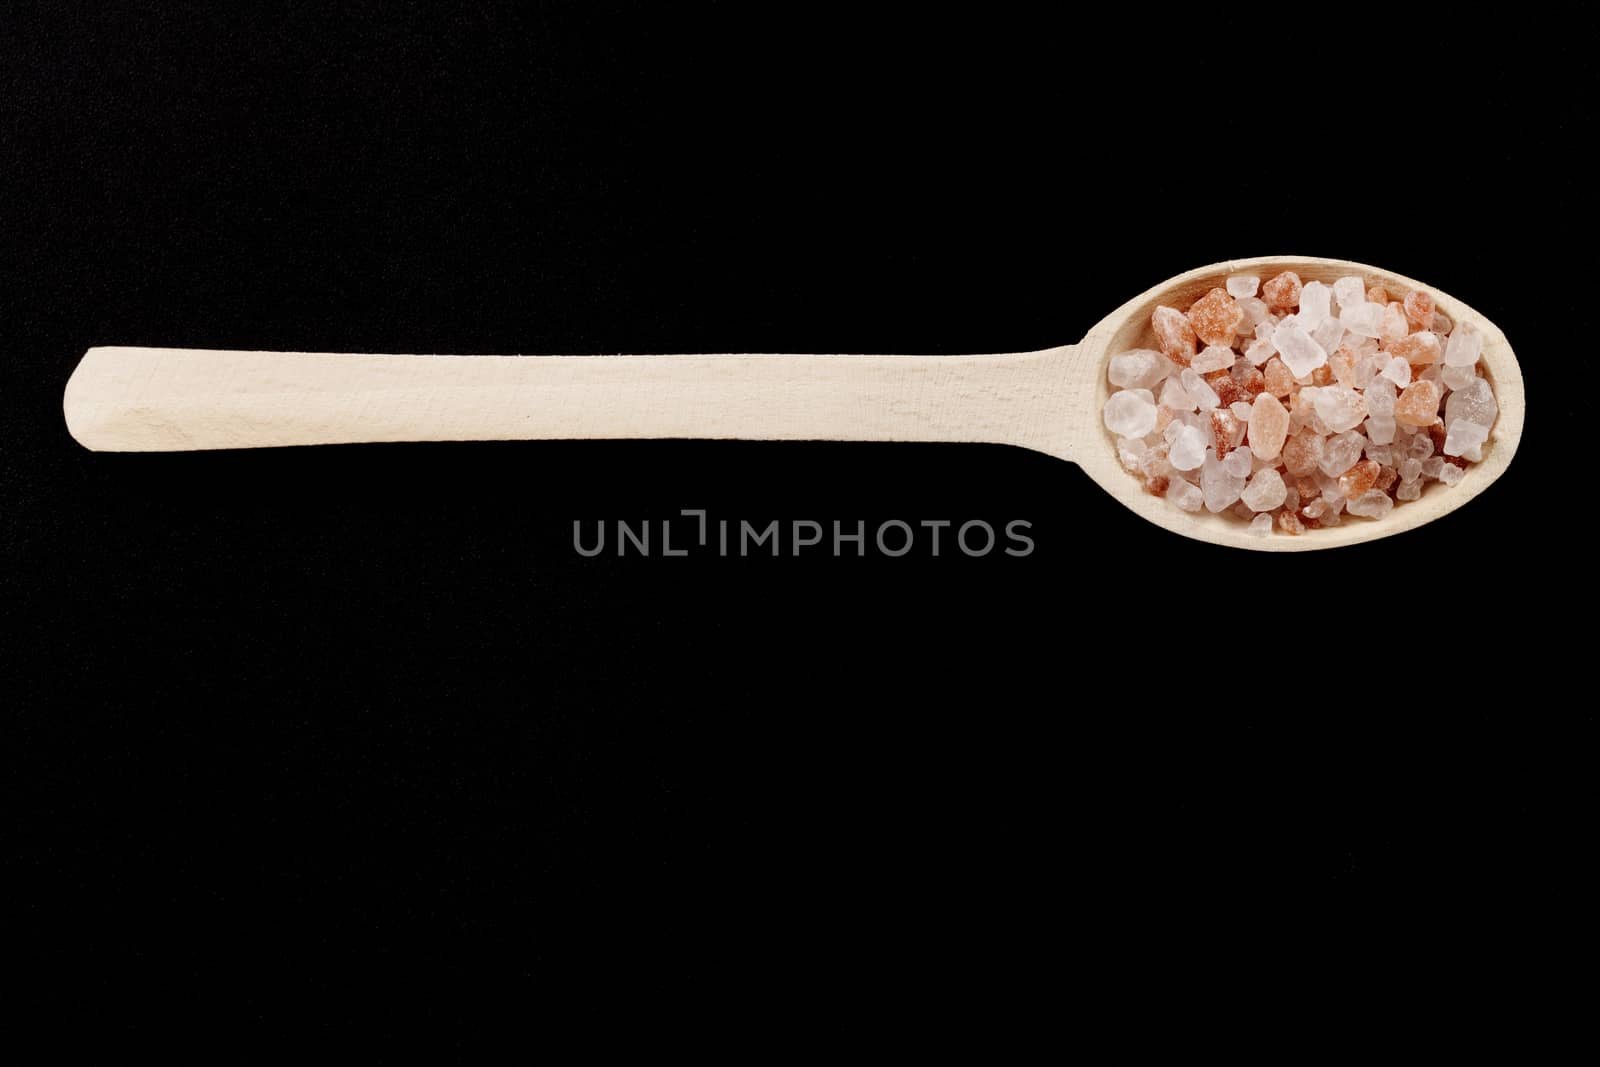 Wood Spoon on Black by orcearo